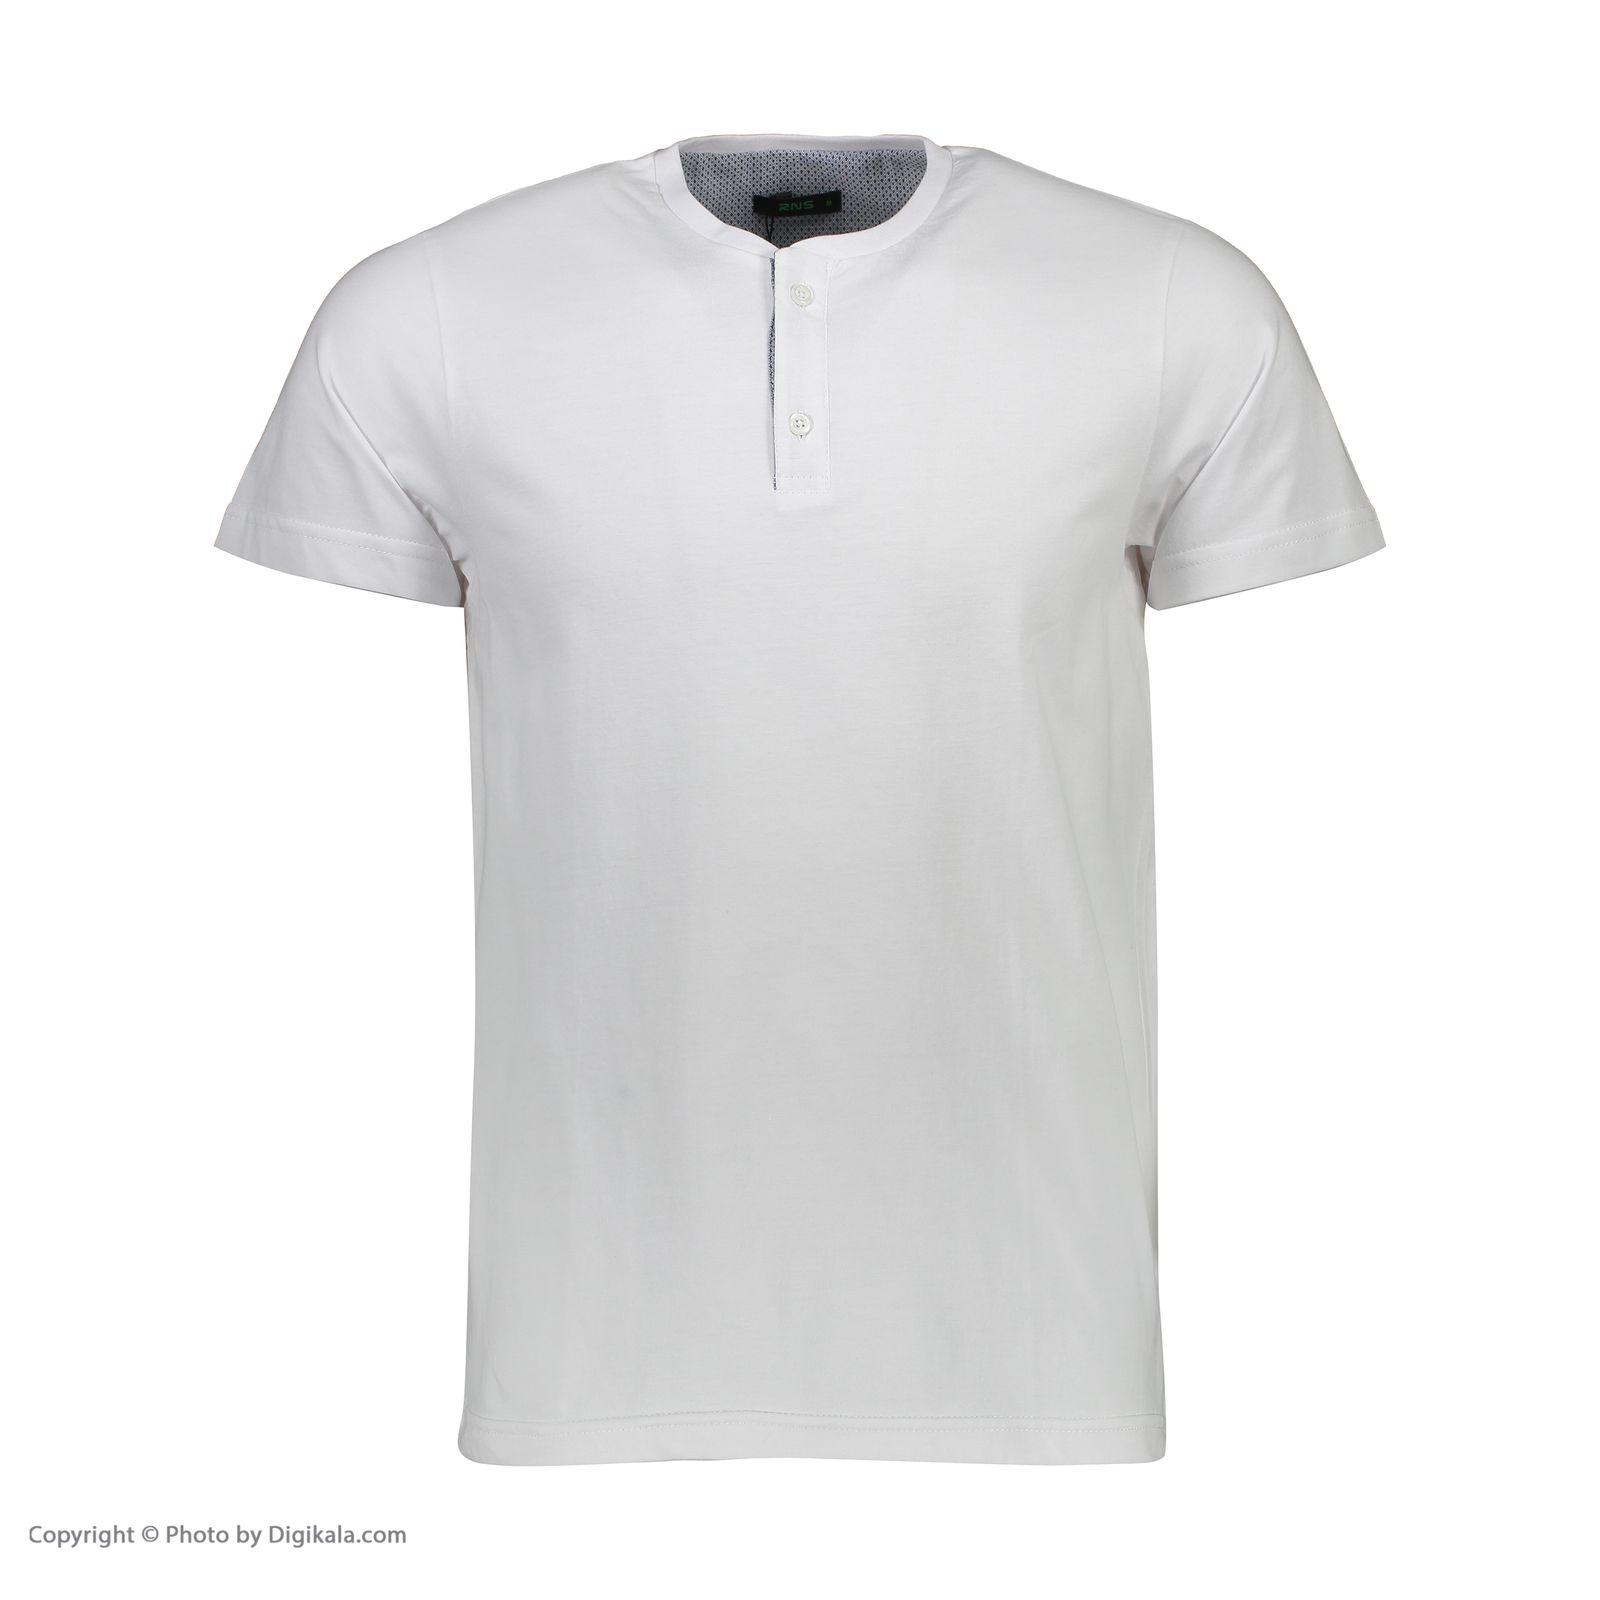 تی شرت مردانه آر ان اس مدل 1131117-01 - سفید - 2